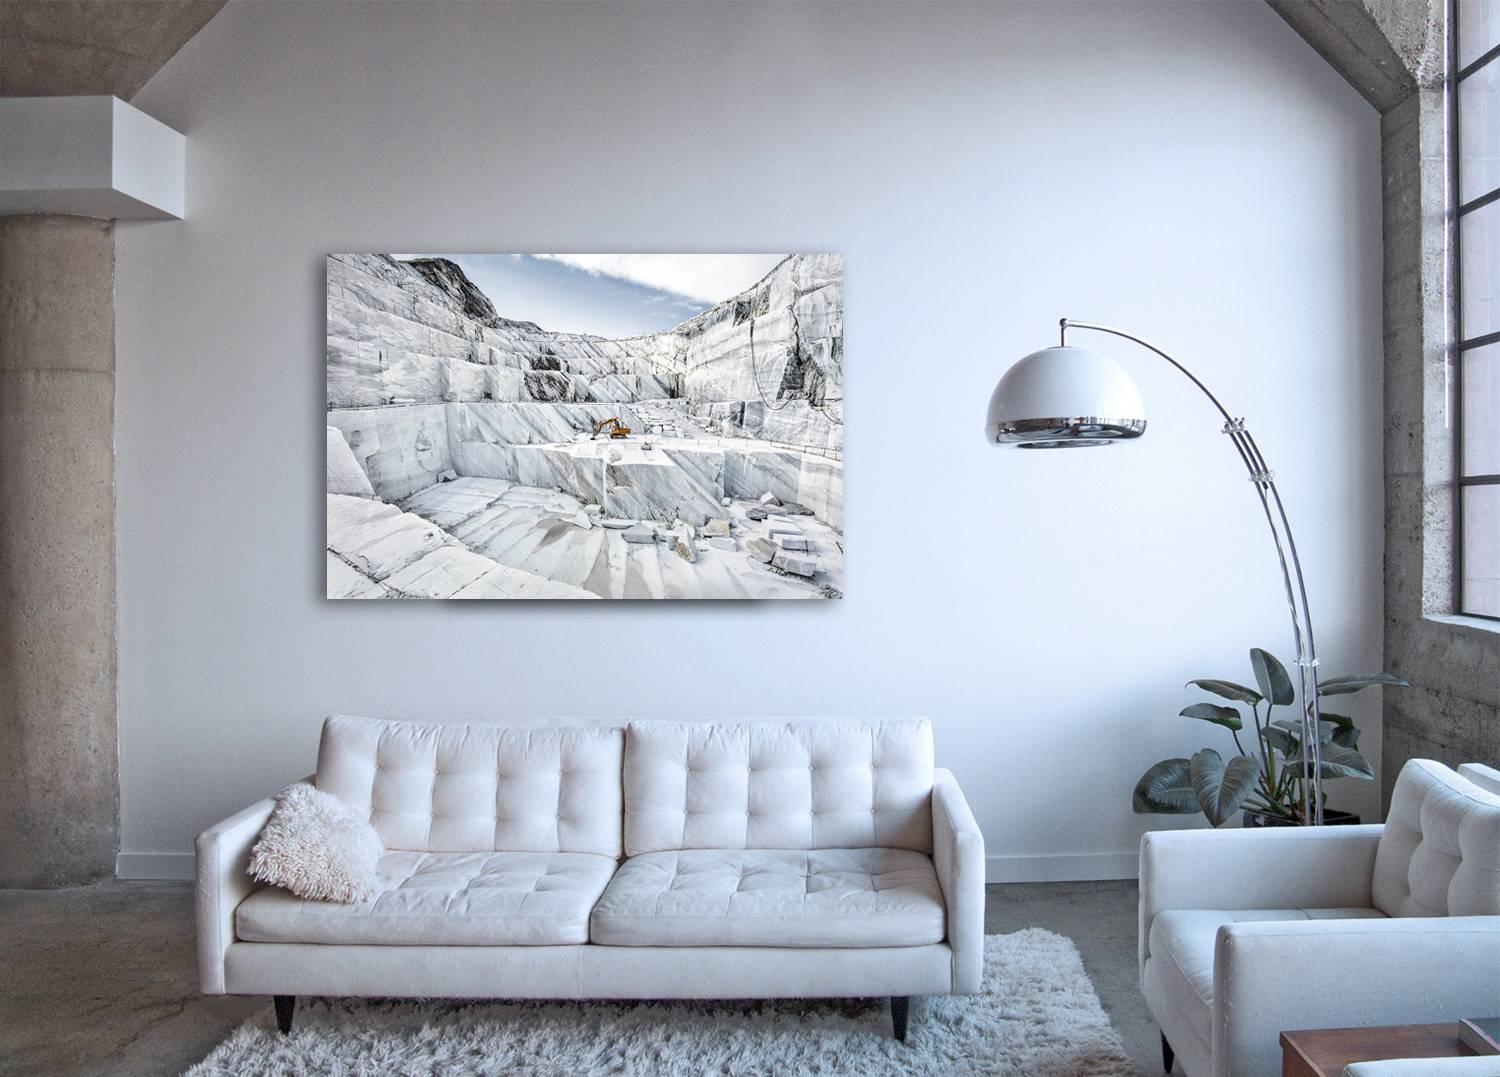 Marmo di Carrara – Großformatfotografie eines ikonischen italienischen Marmorbruchs – Photograph von Frank Schott